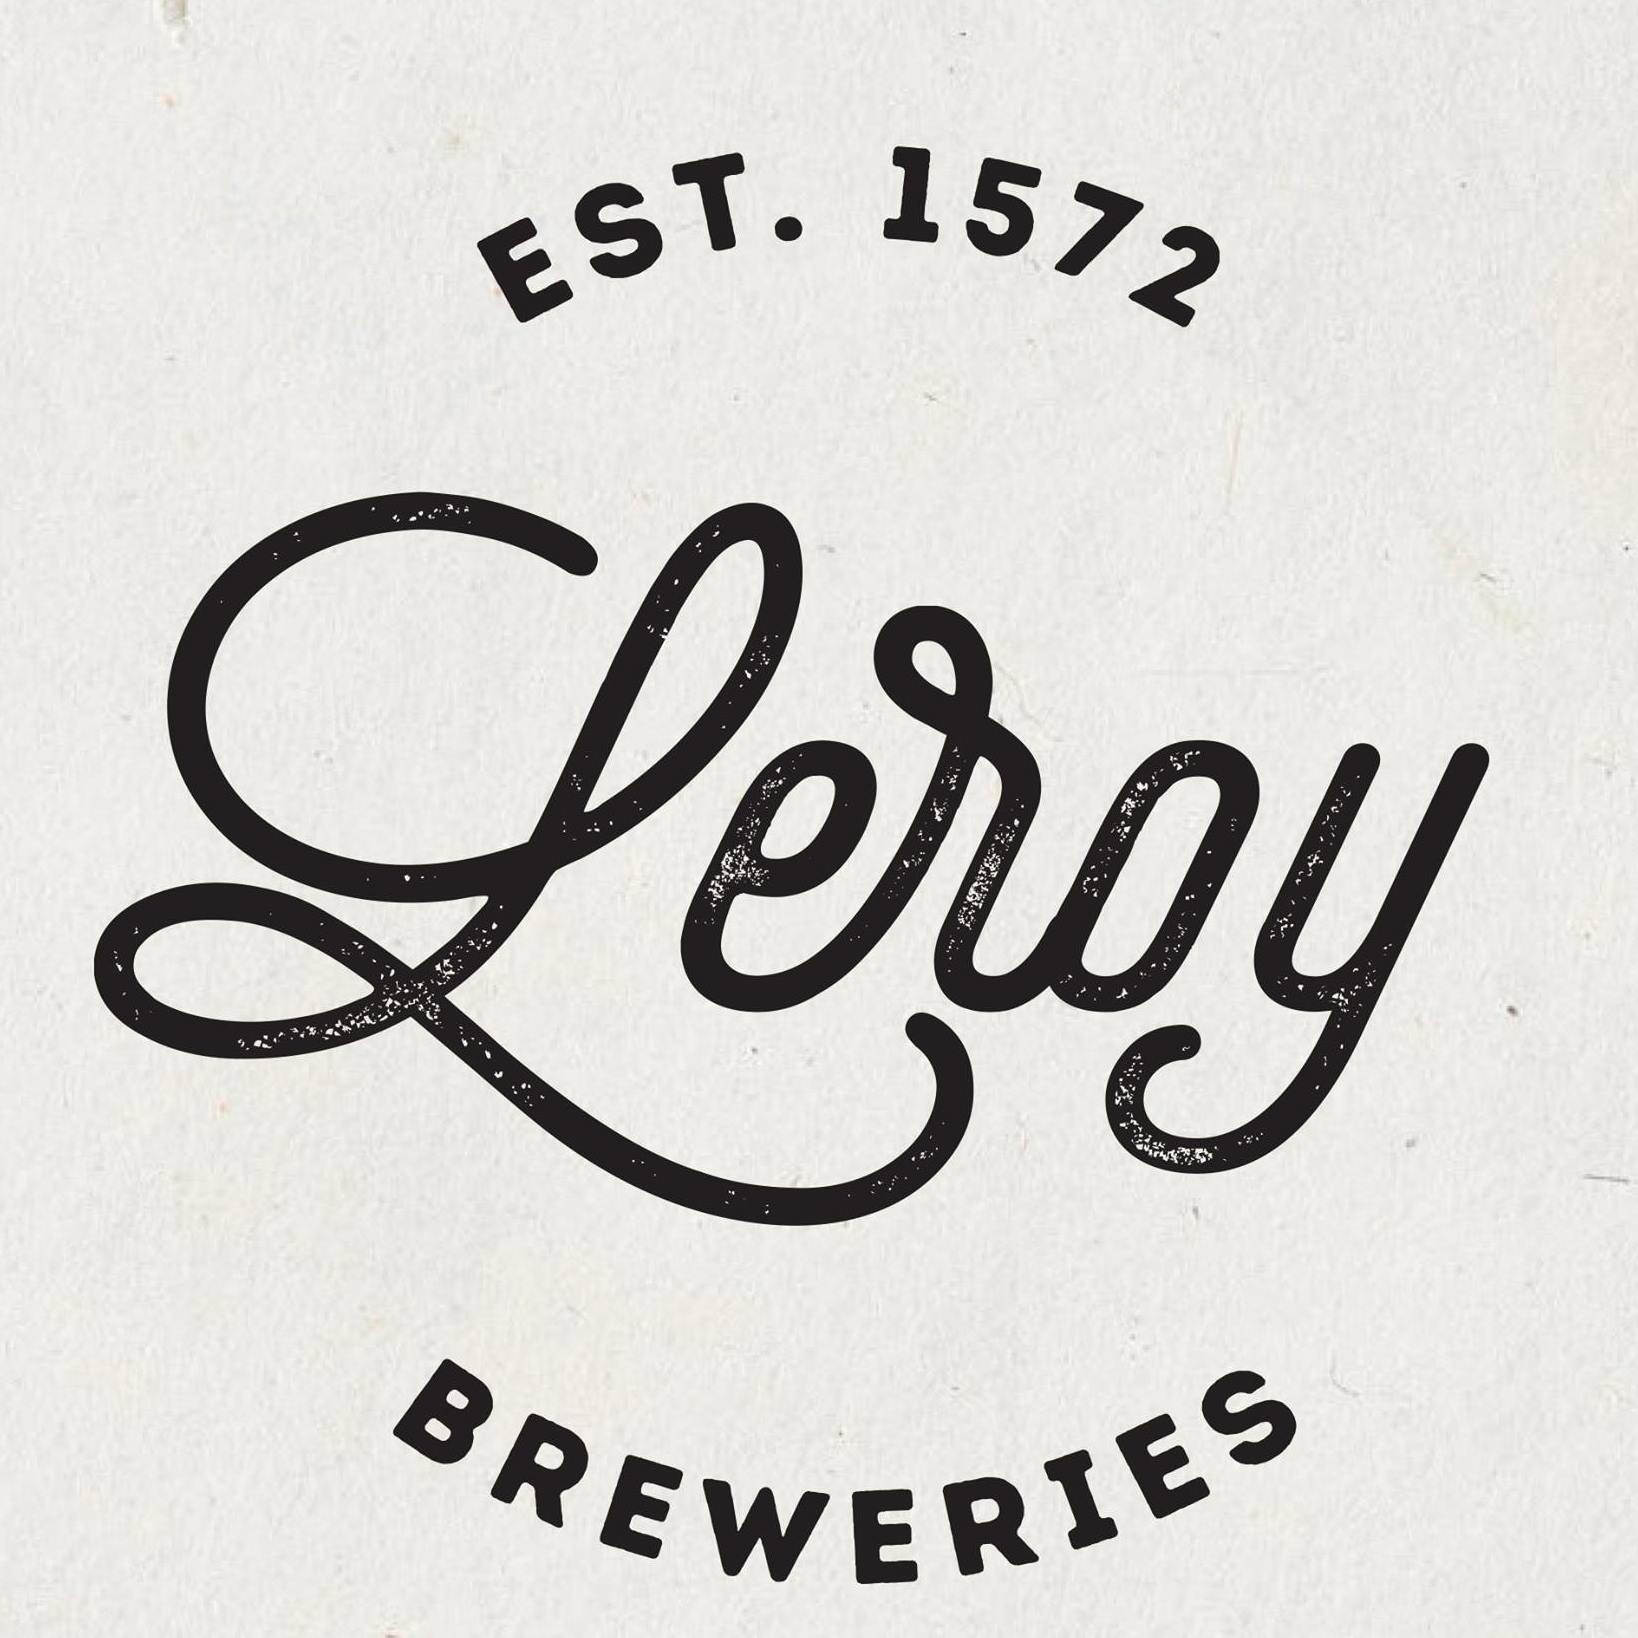 Leroy-Breweries